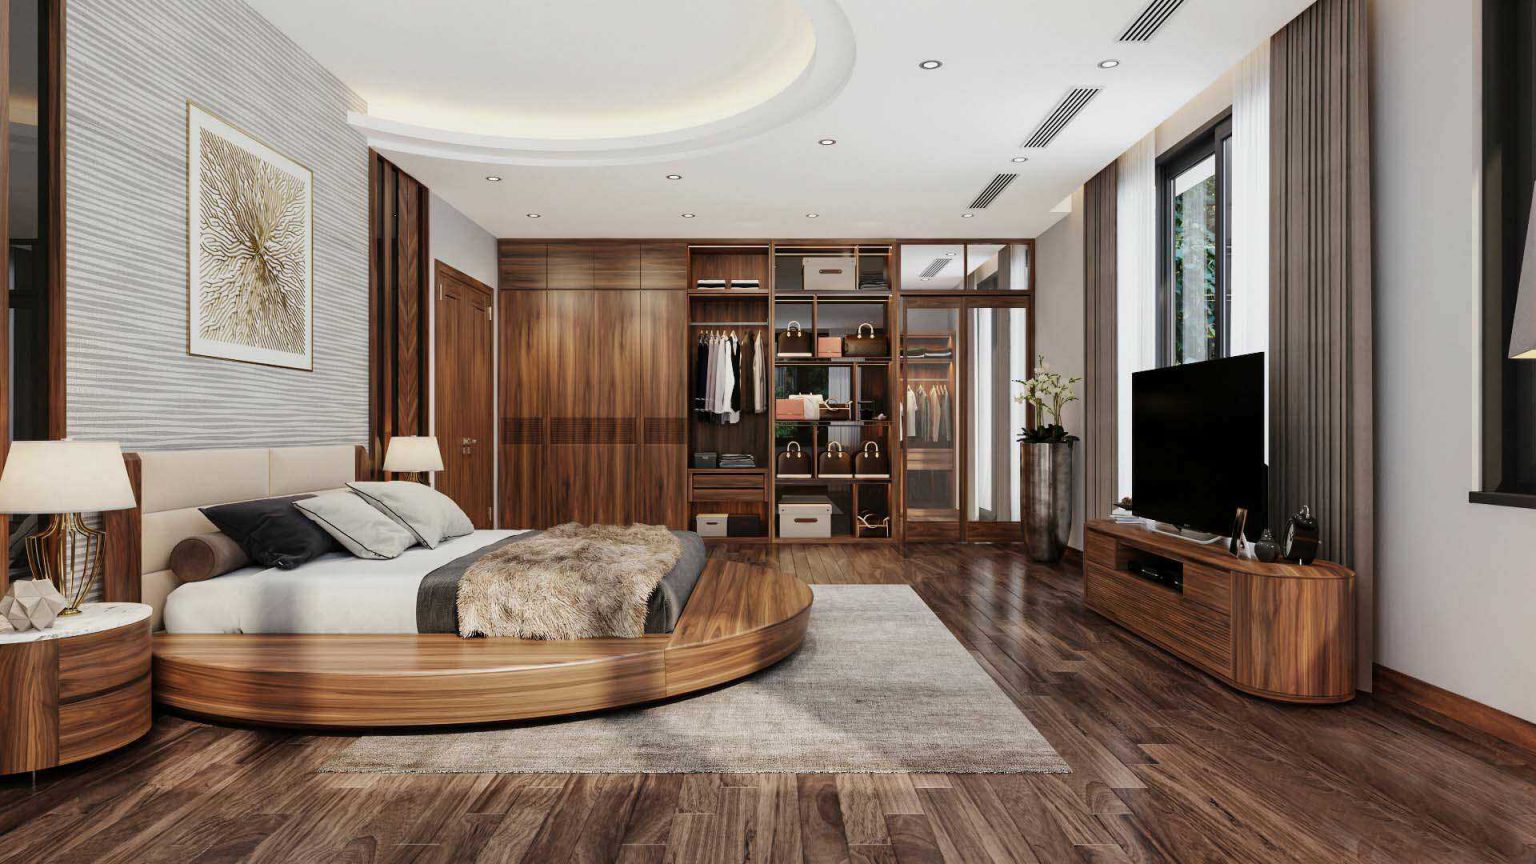 Mẫu thiết kế nội thất chung cư gỗ tự nhiên đẹp